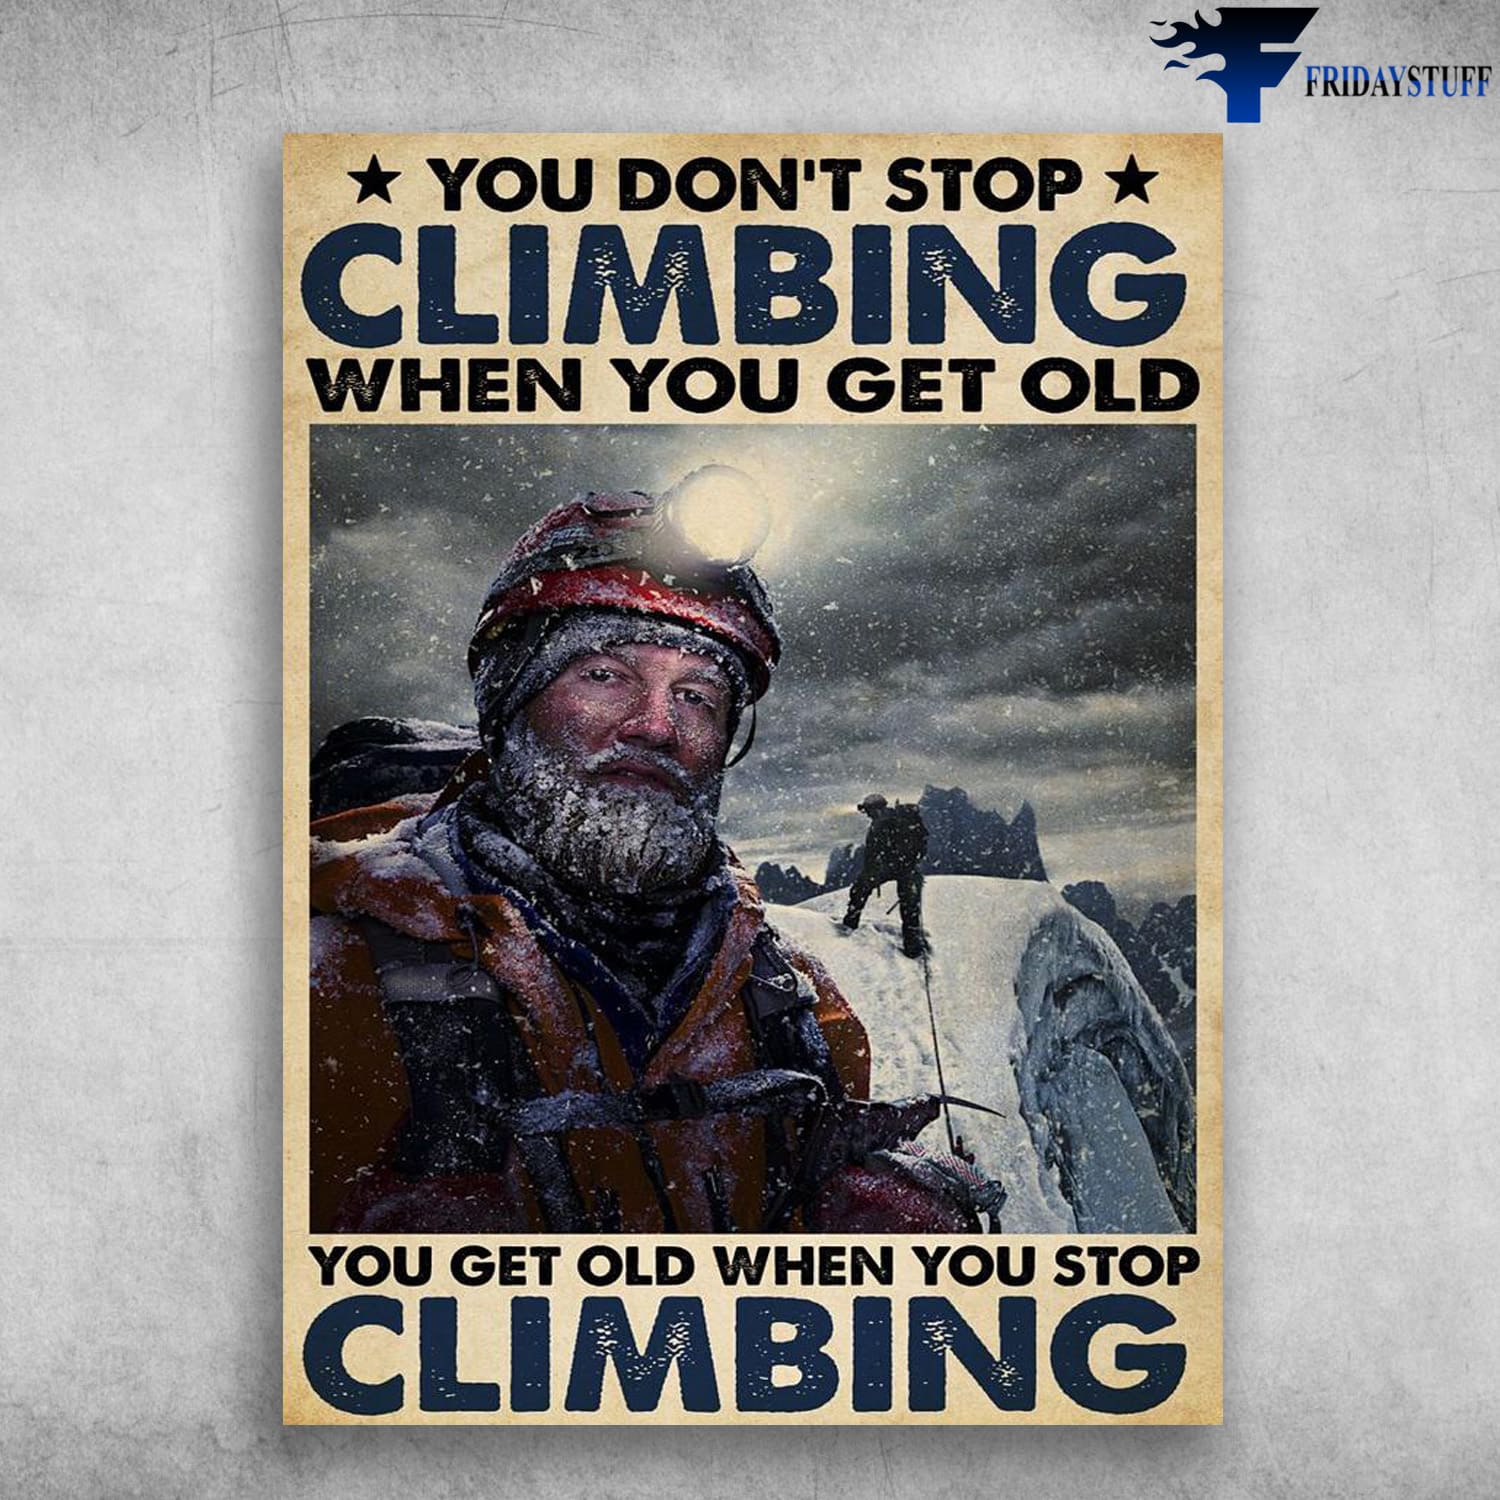 Old Man Climbing, Climbling Poster, You Don't Stop Climbing When You Get Old, You Get Old When You Stop Climbing